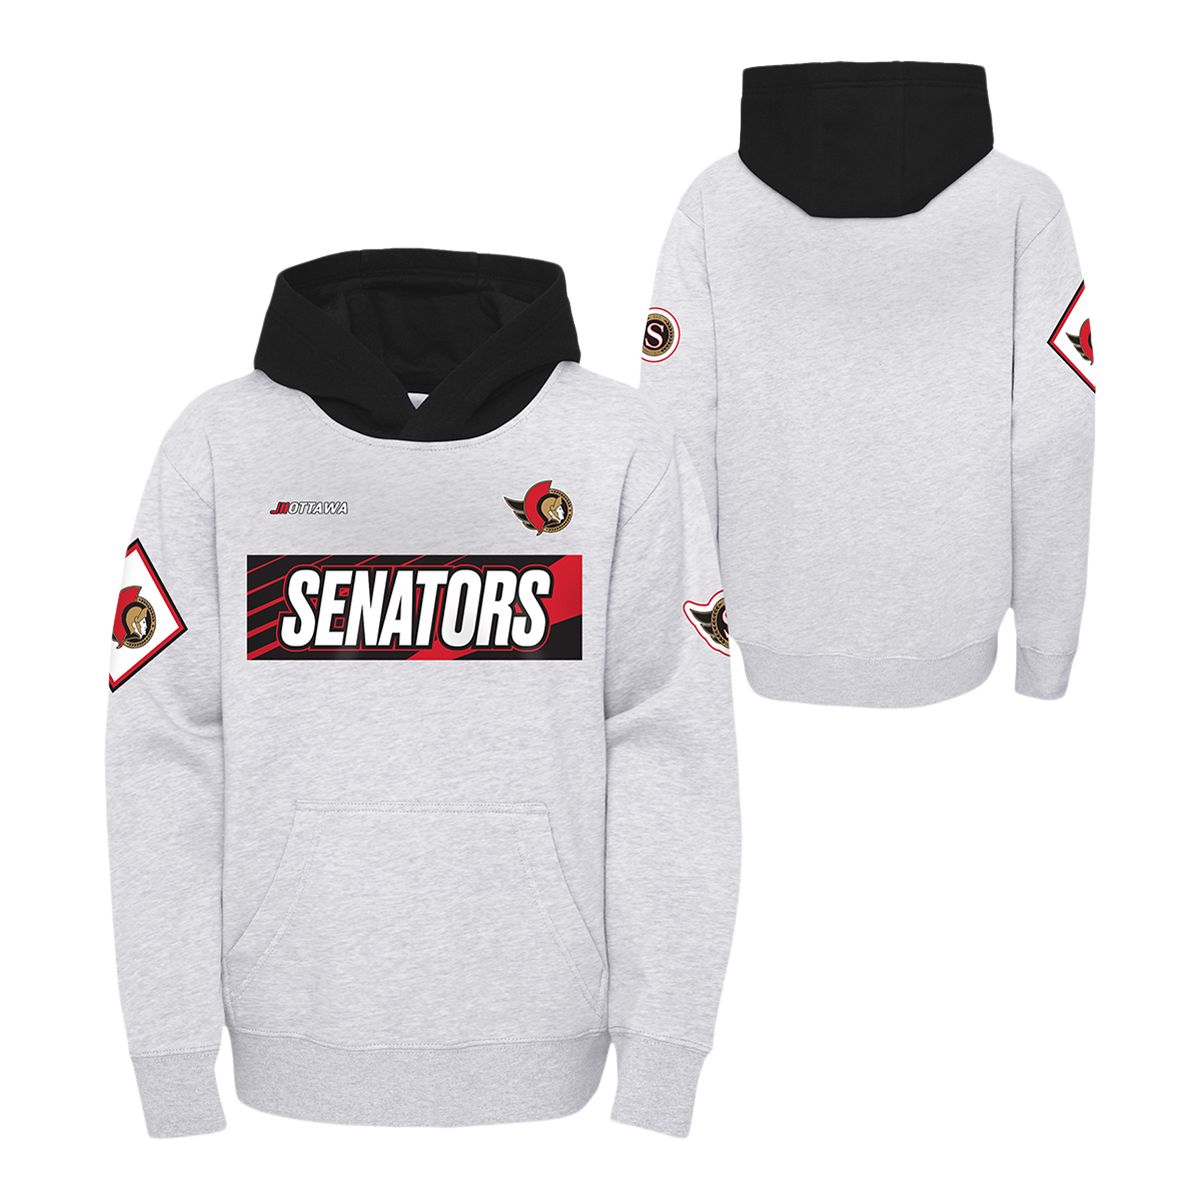 NHL Ottawa Senators Youth Team Jersey, Sizes 8-20 